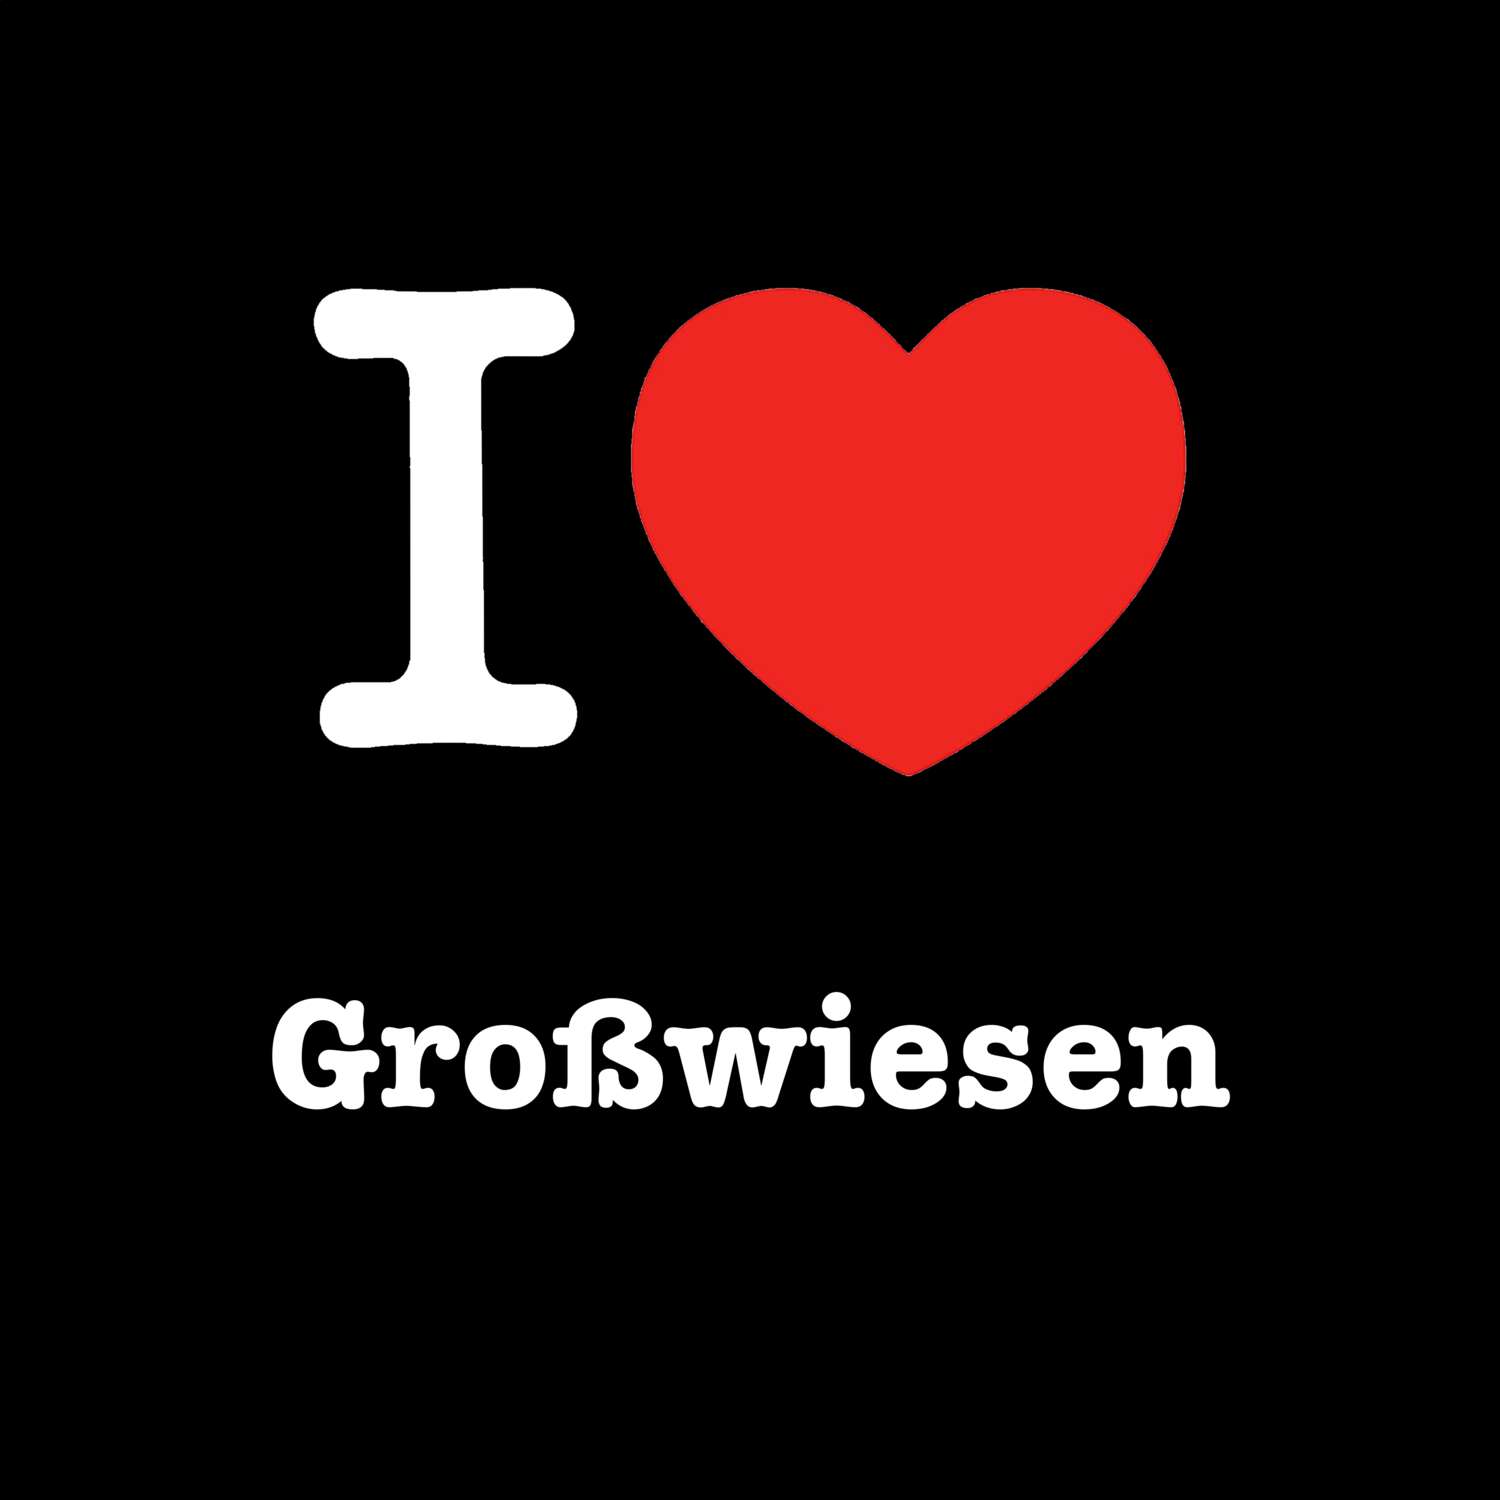 Großwiesen T-Shirt »I love«